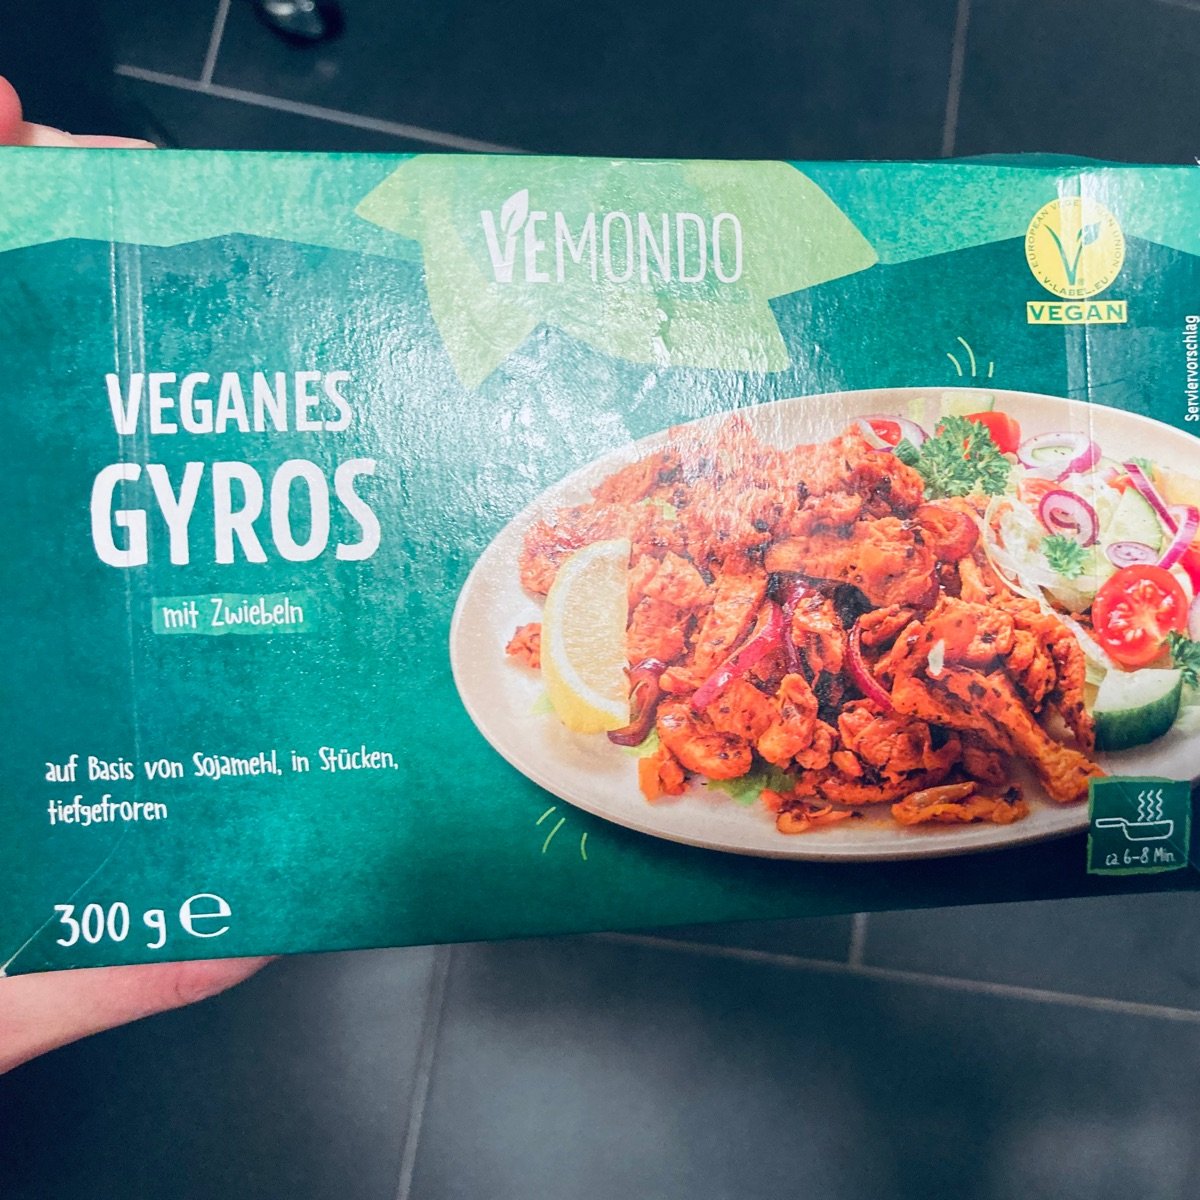 Zwiebeln, Gyros Review mit | Vemondo vegan abillion